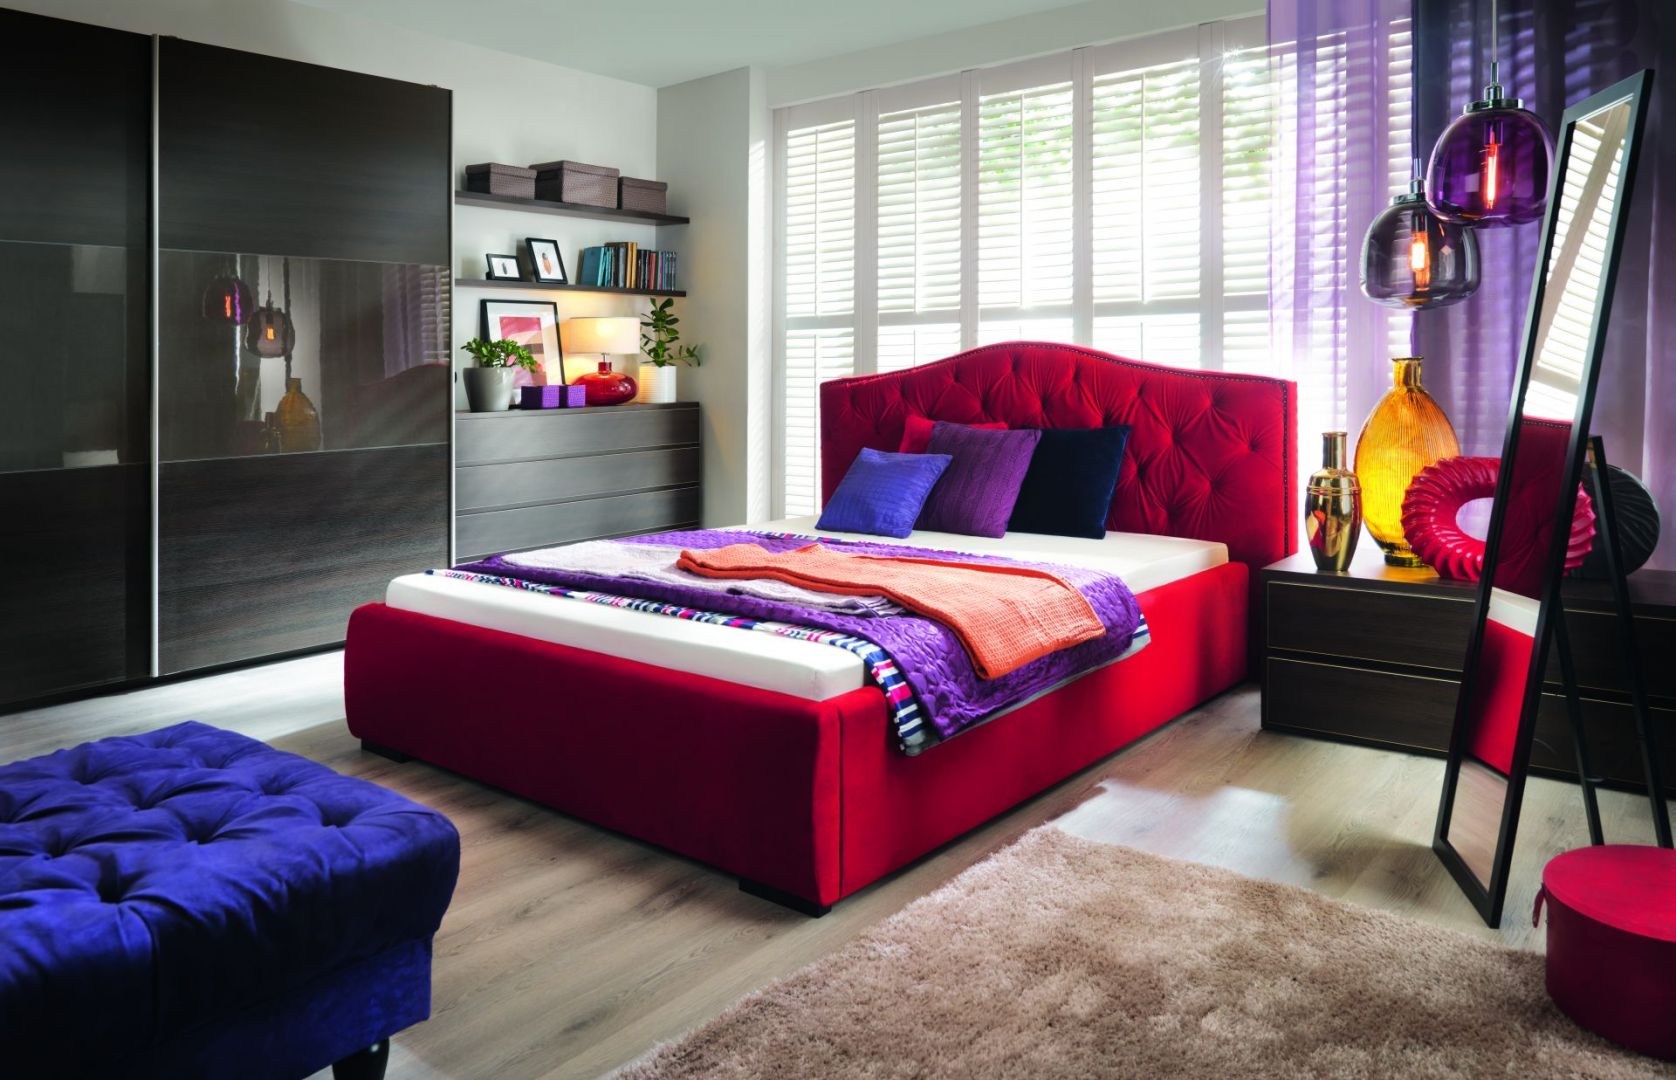 Aleksandra to piękne, tapicerowane łoże do sypialni, którego głównym atutem jest pikowany zagłówek. Fot. Black Red White